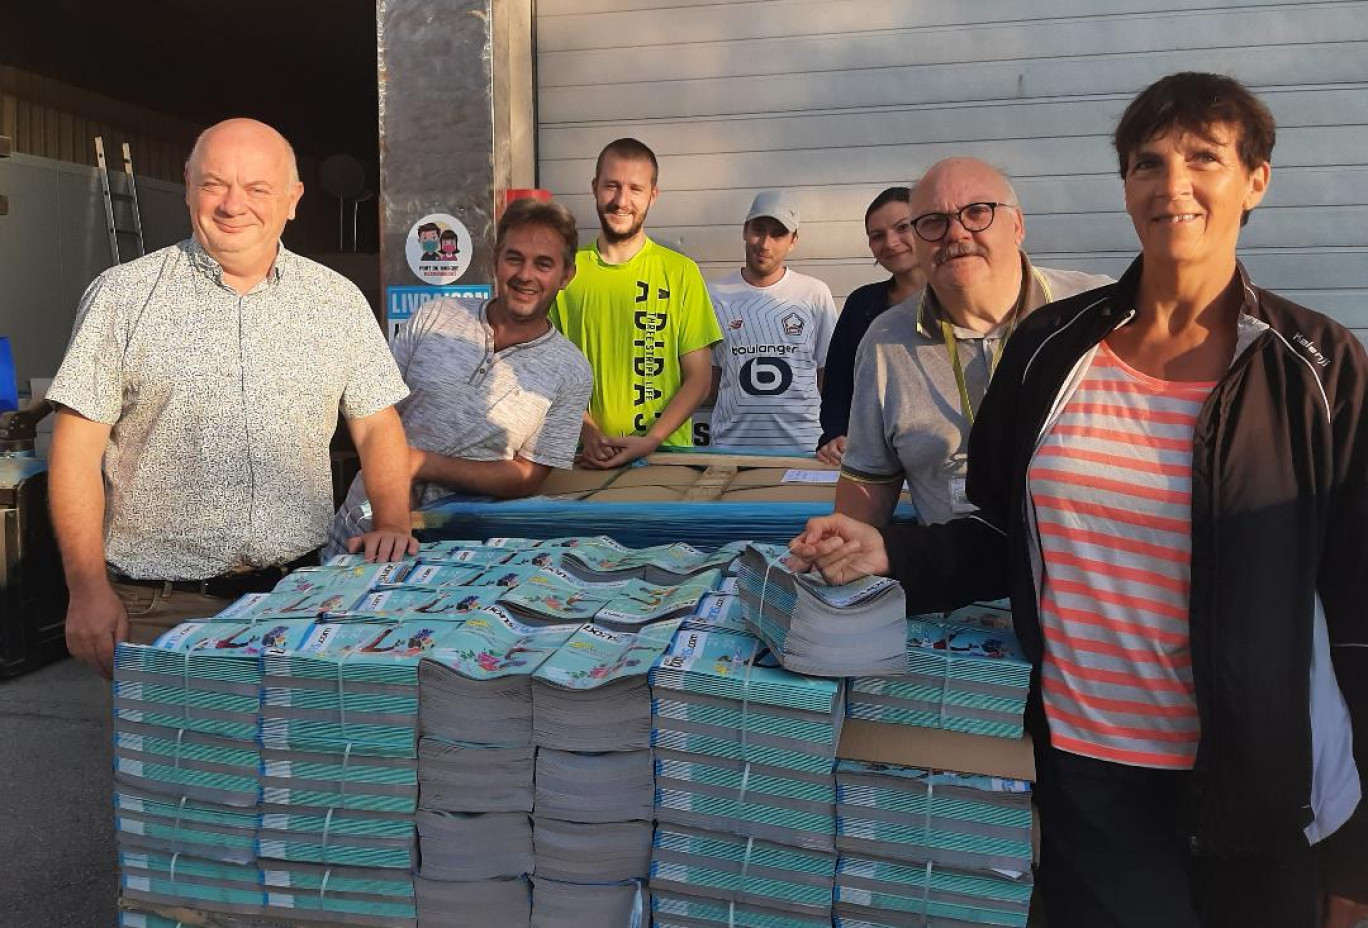 Olivier Thierry (à gauche), gérant fondateur de "100% bons plans", et une partie de son équipe de distributeurs posent devant la palette de magazines, tout juste sortis de chez l'imprimeur.